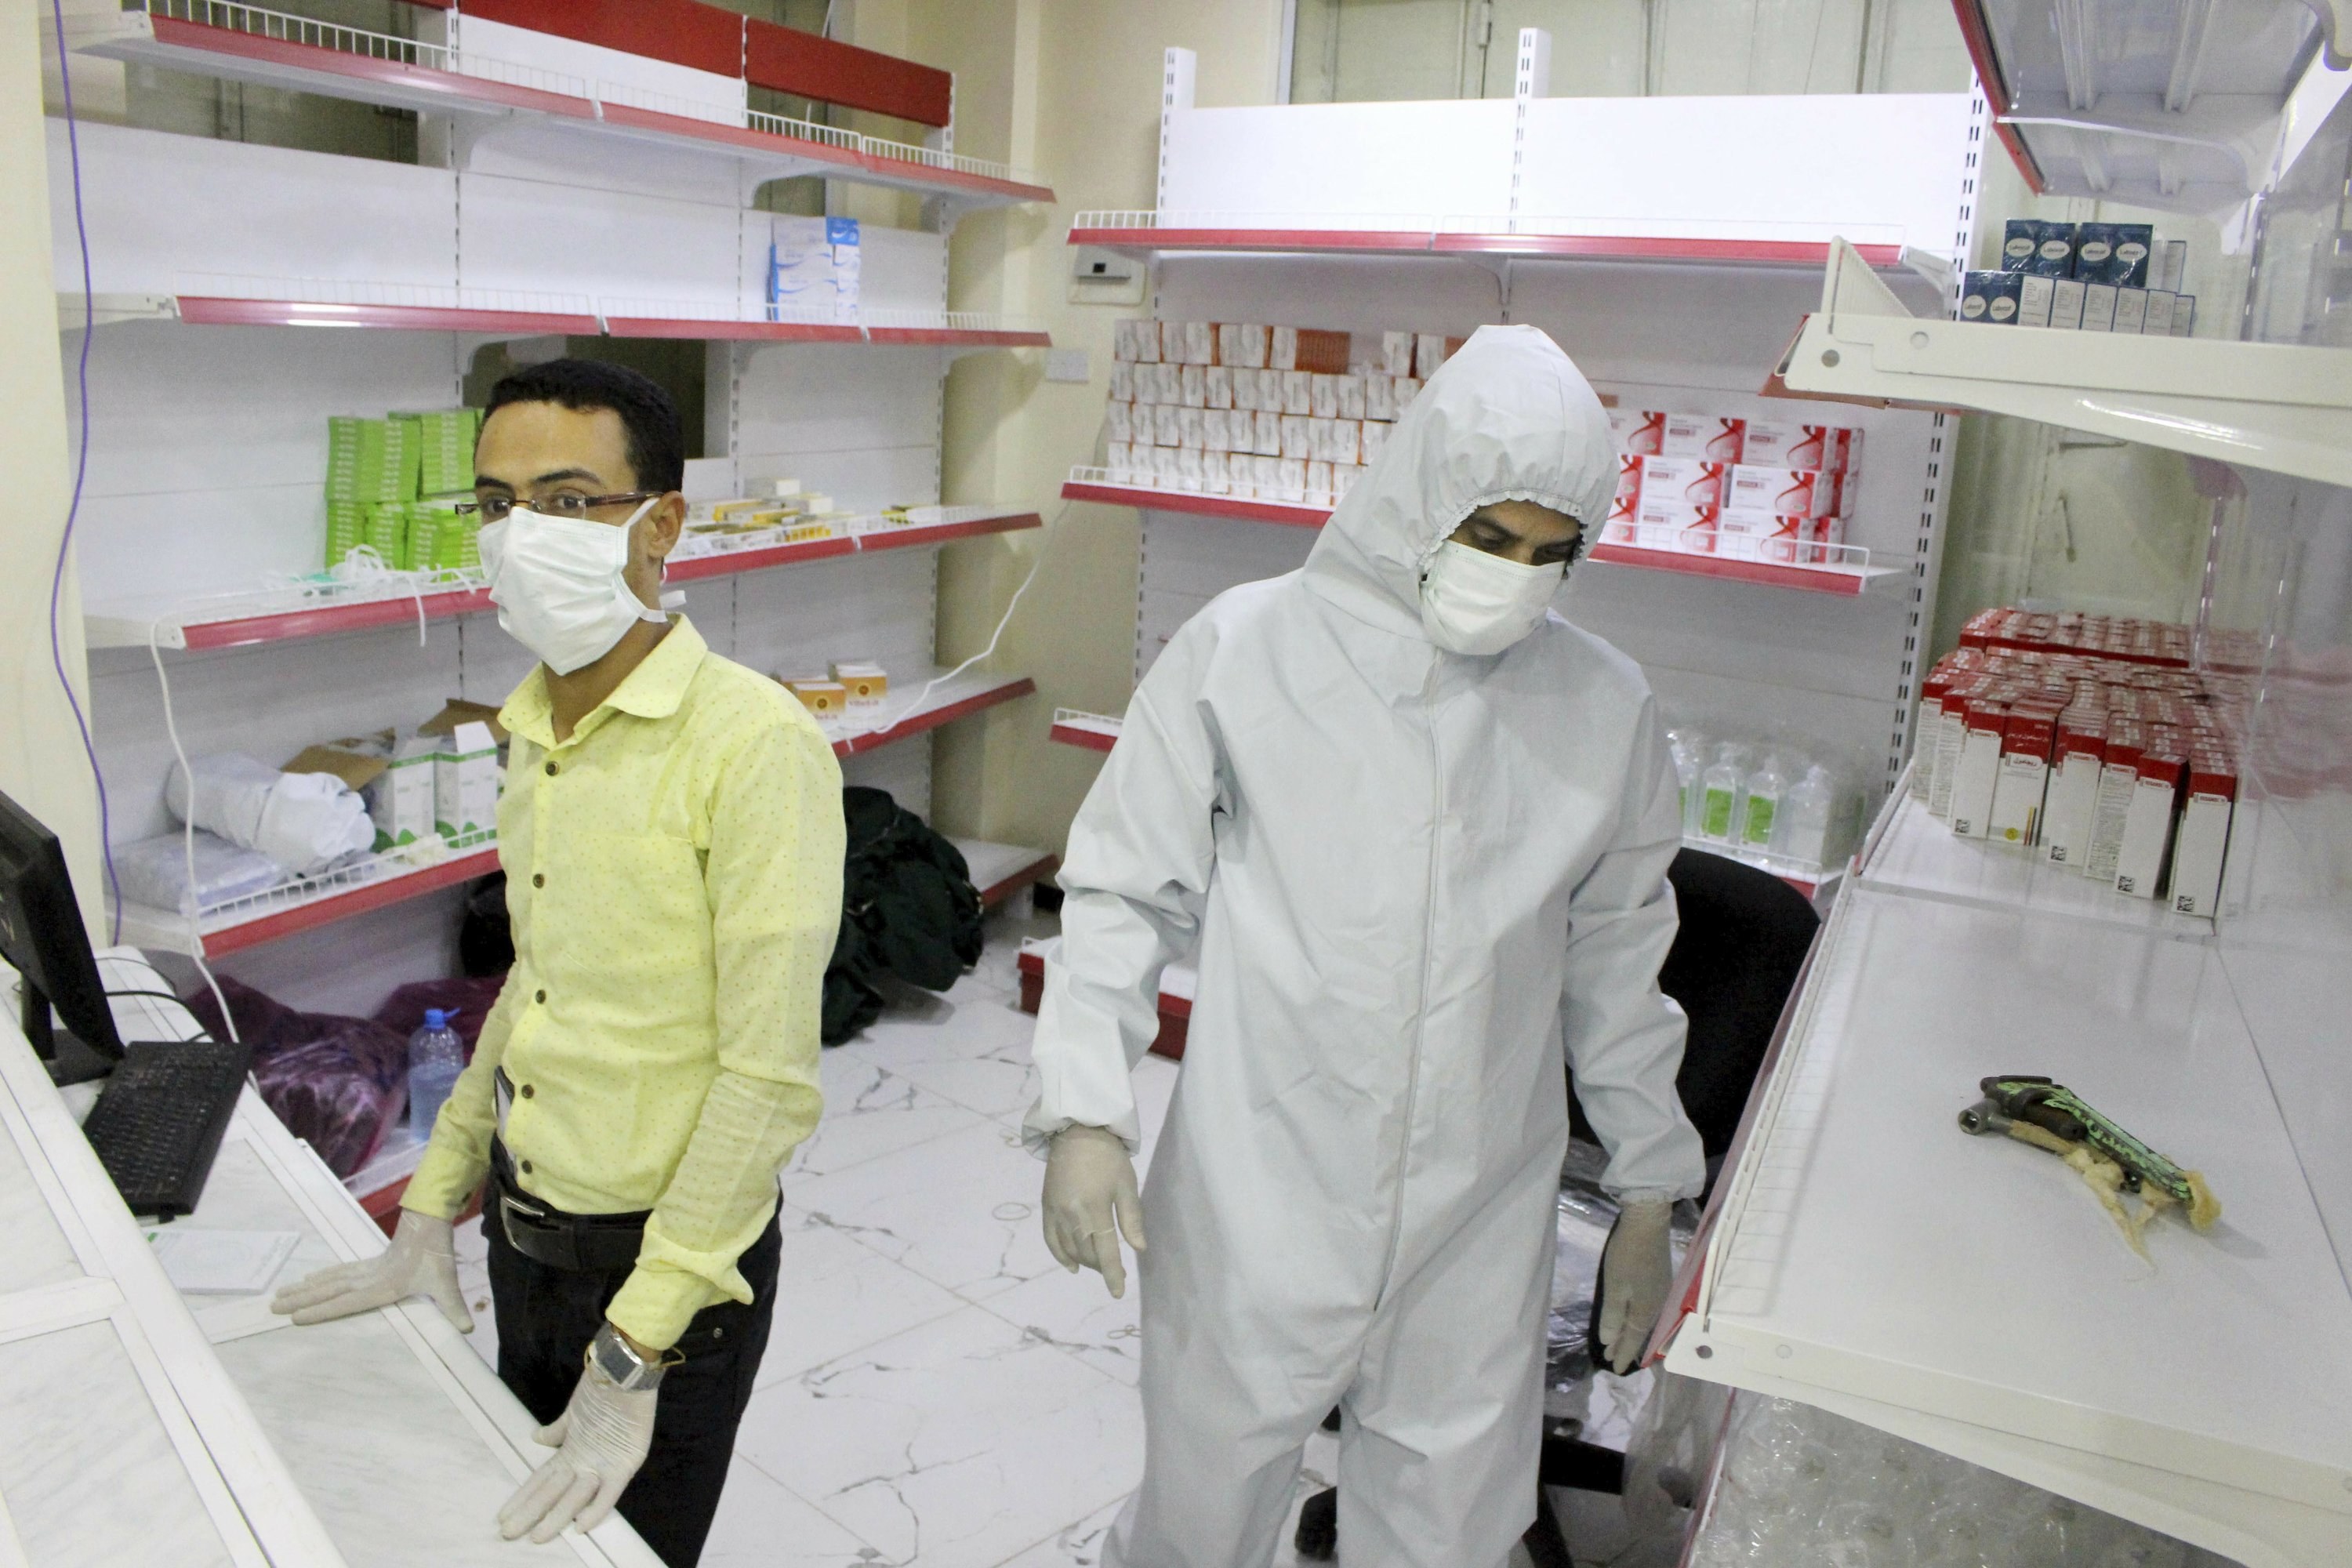 إحصائية لأطباء توفوا نتيجة إصابتهم بفيروس كورونا في صنعاء وعدن ومحافظات أخرى